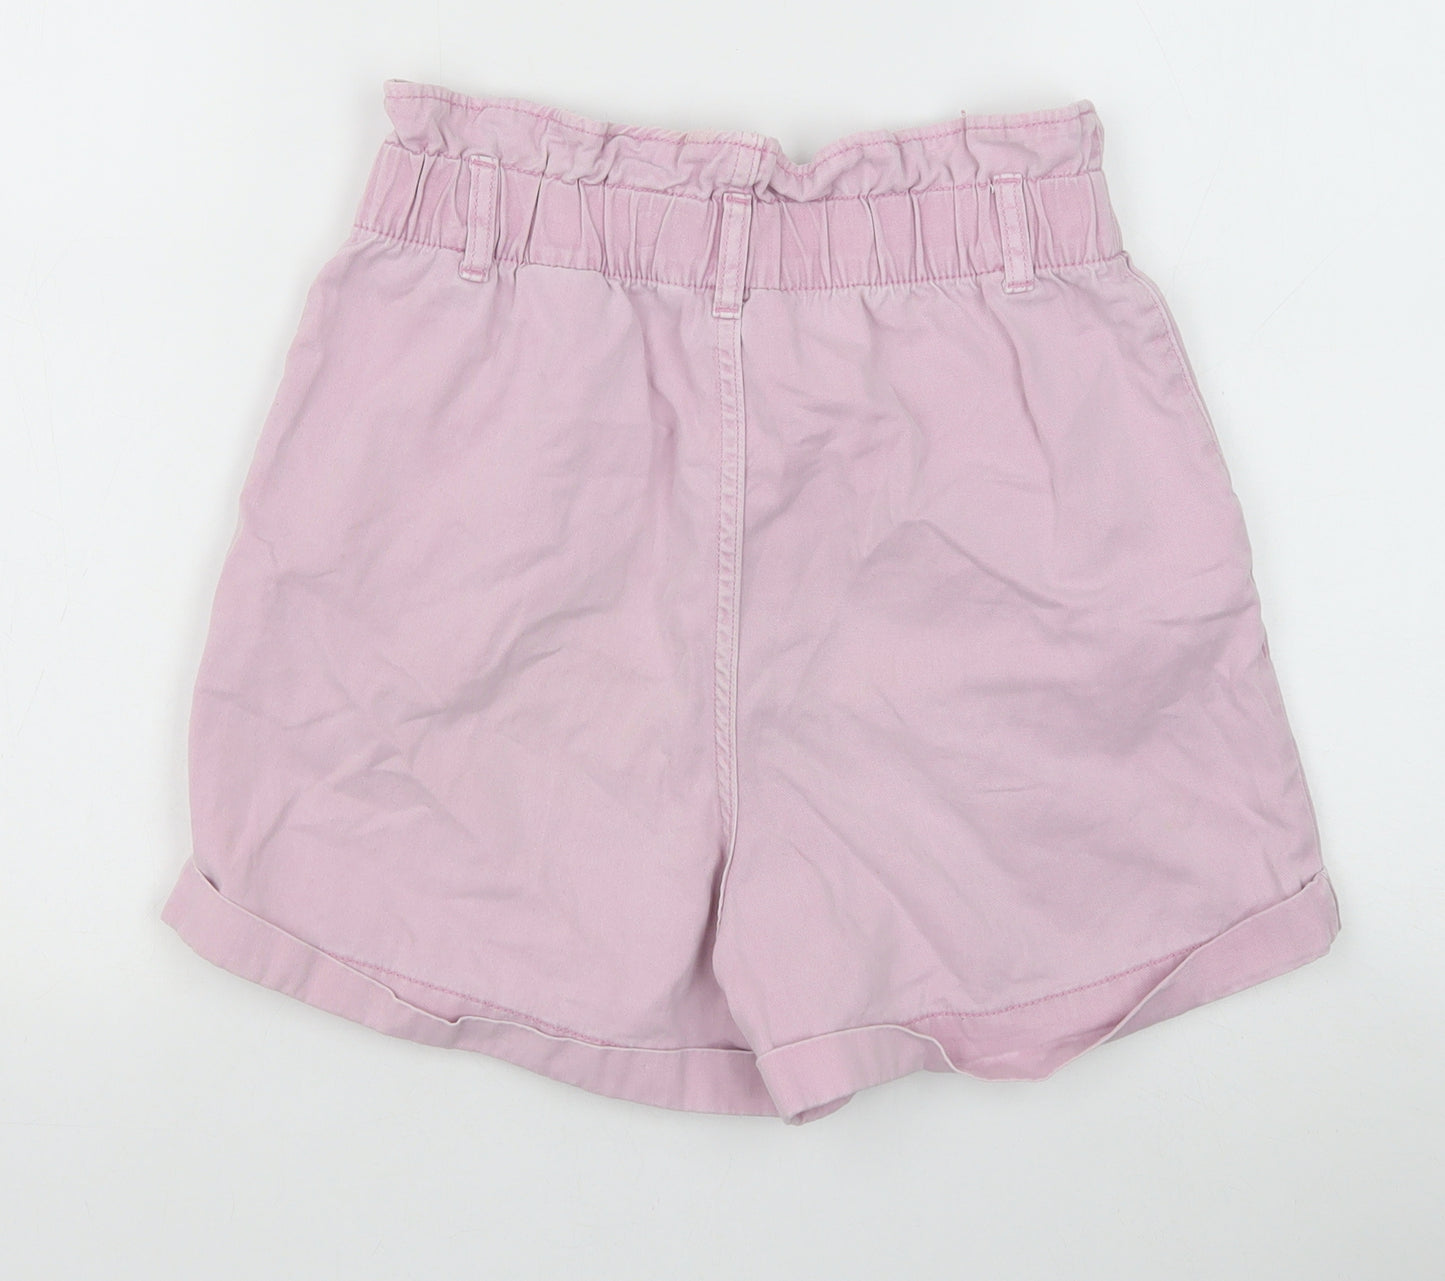 H&M Womens Pink 100% Cotton Paperbag Shorts Size 10 Regular Zip